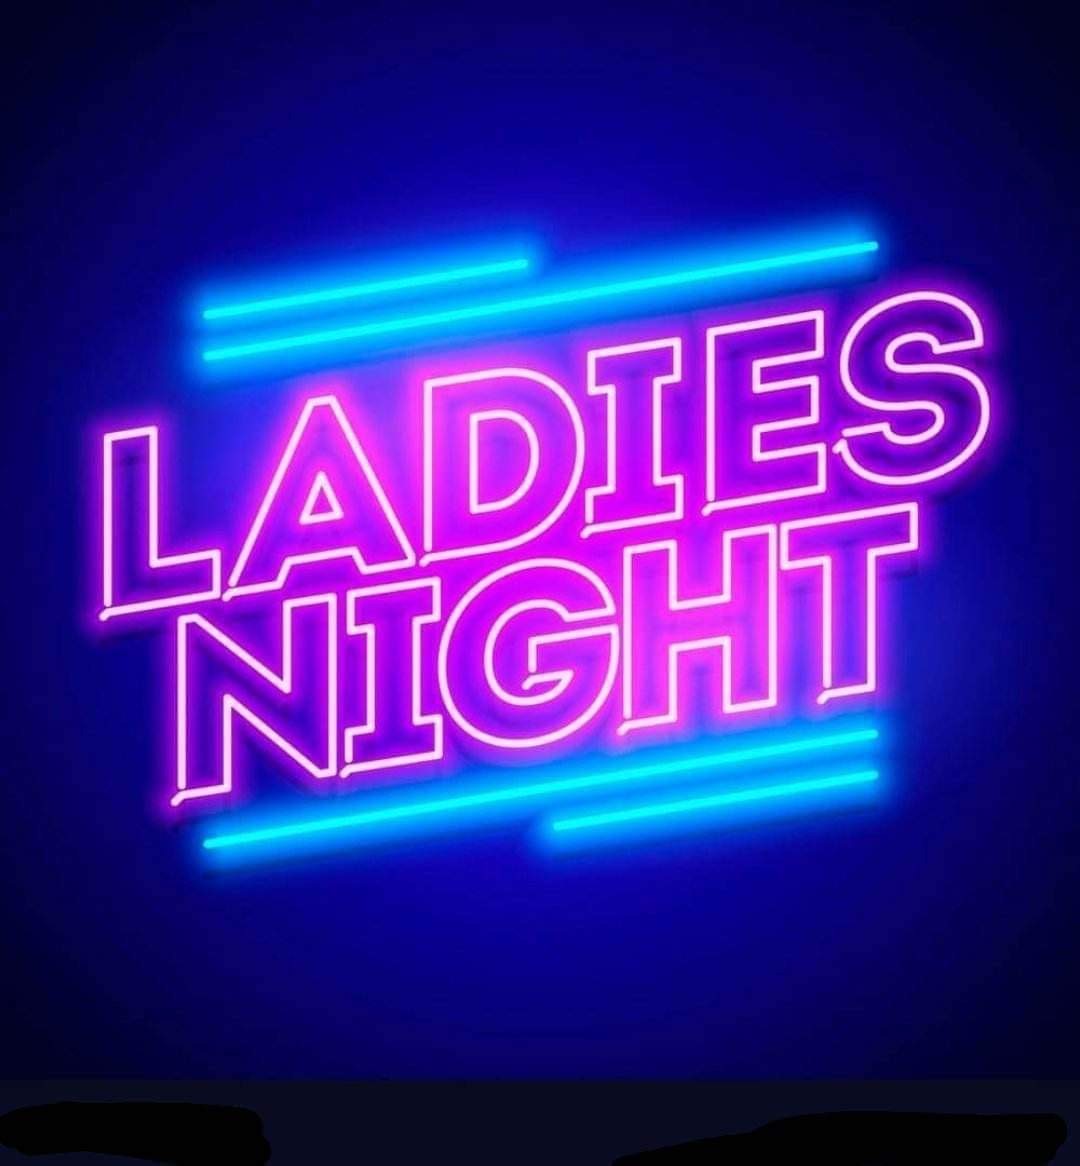 Ladies Night  on mar. 25, 19:30@Falcon hotel - Compra entradas y obtén información enwhittlesey music nights 